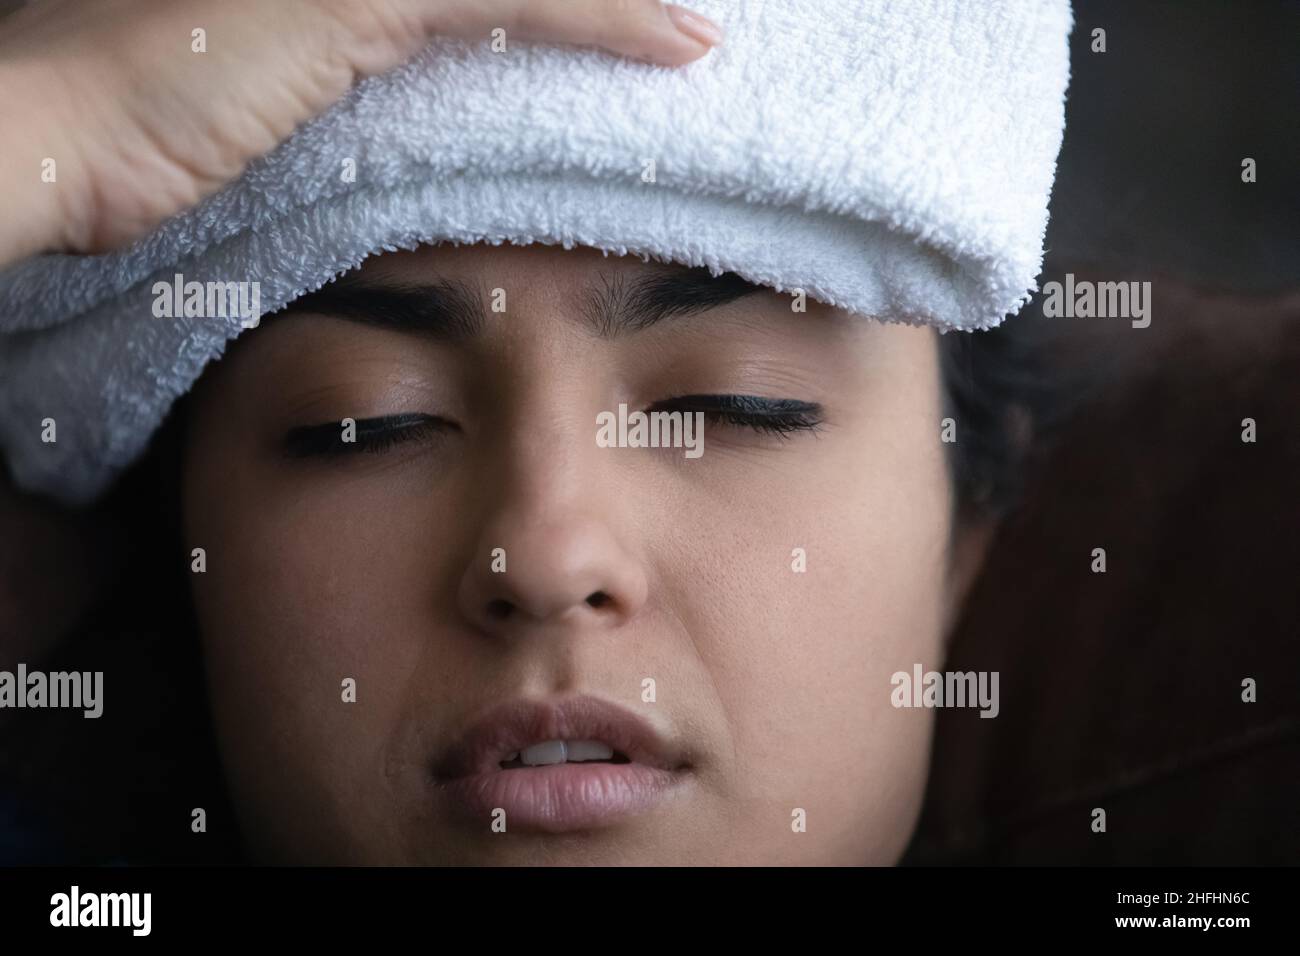 Malsana giovane indiana che soffre di alte temperature. Foto Stock